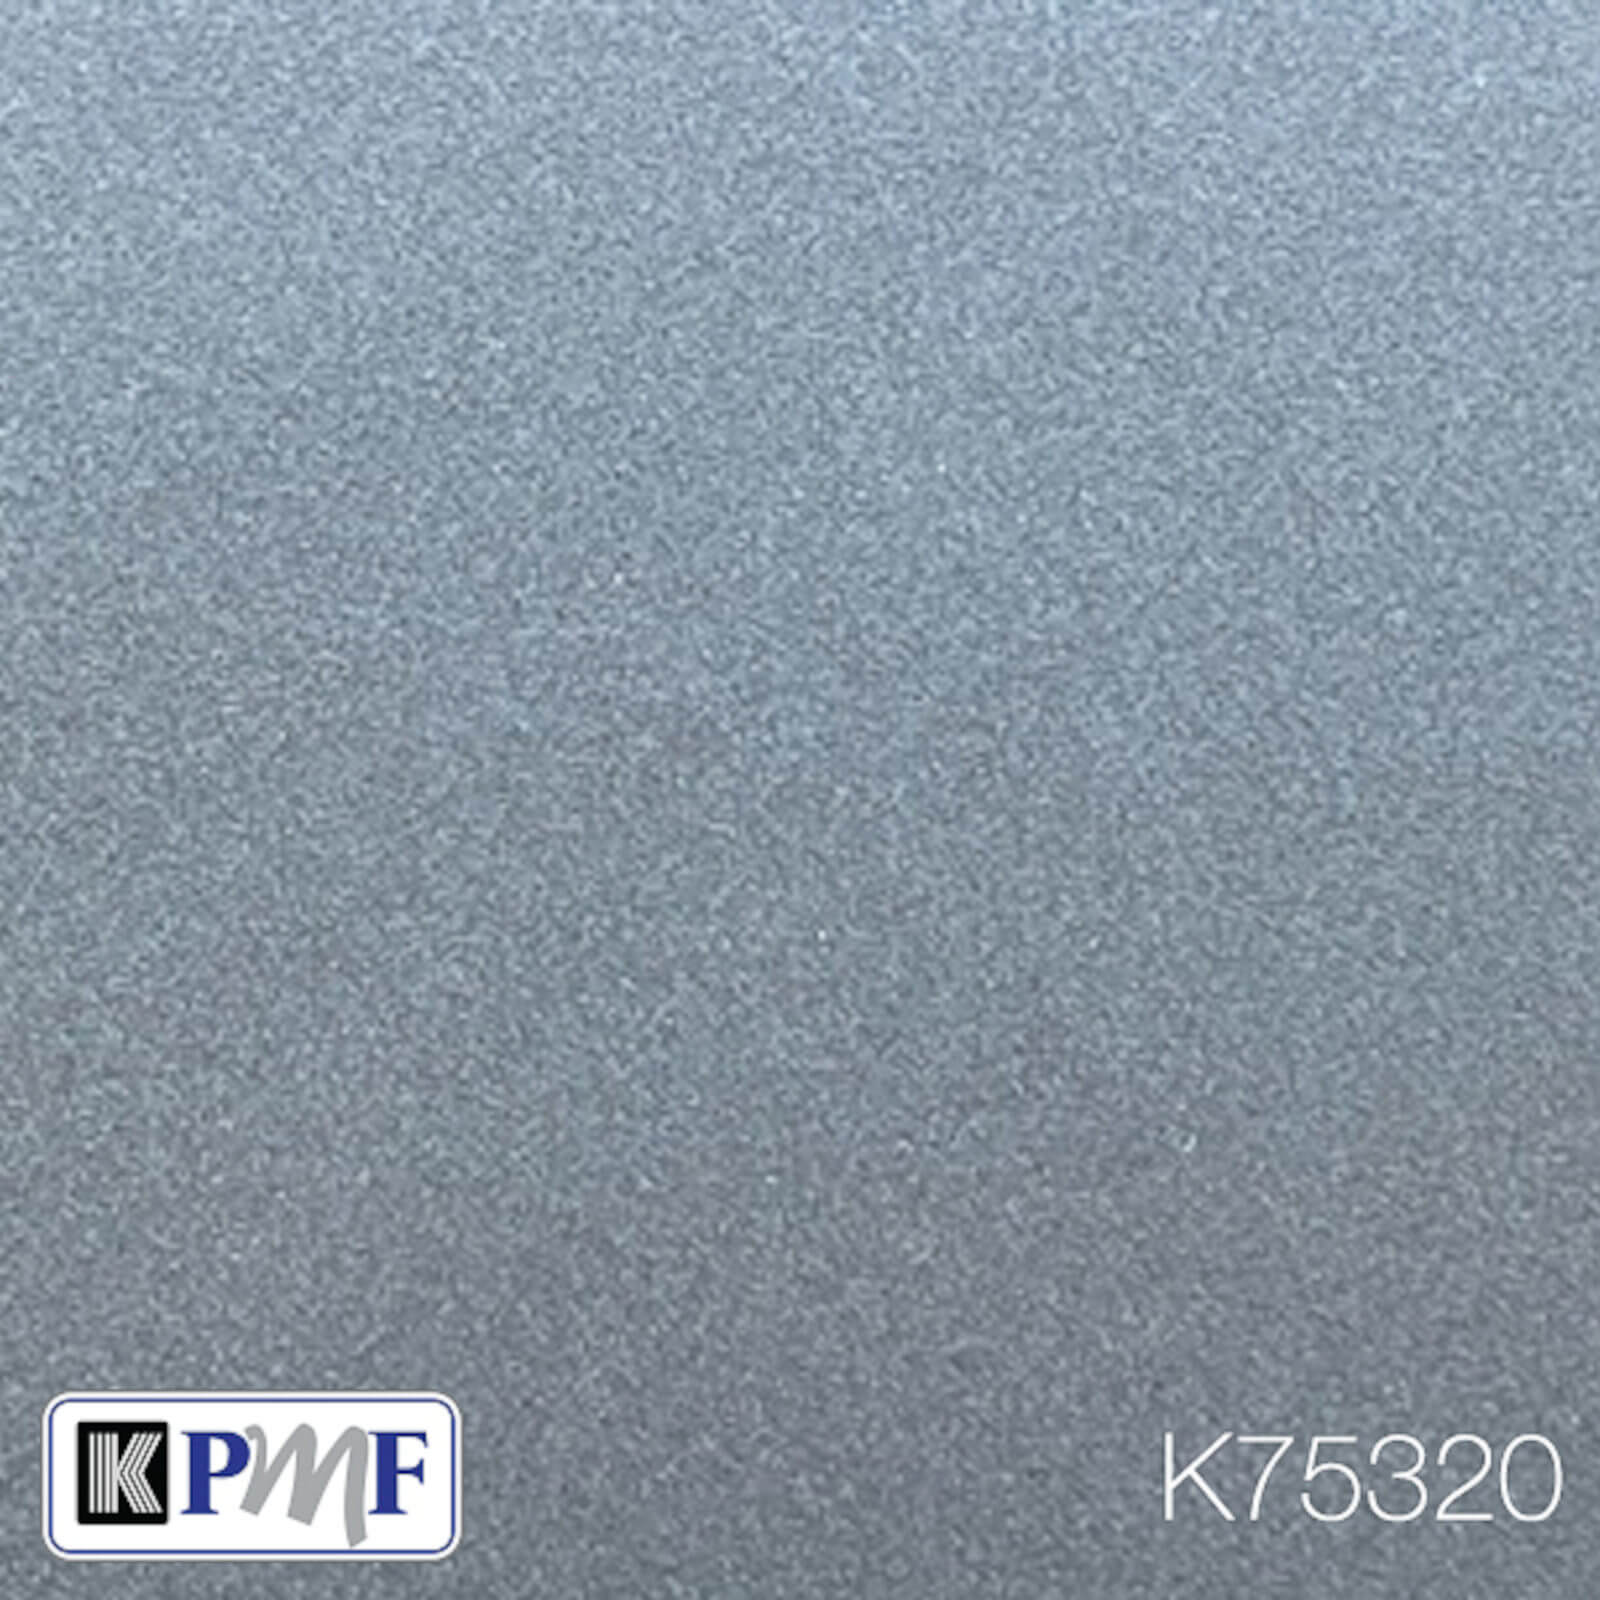 KPMF Metallic Matt  K75000 Series car-wrapping film bei TipTopCarbon